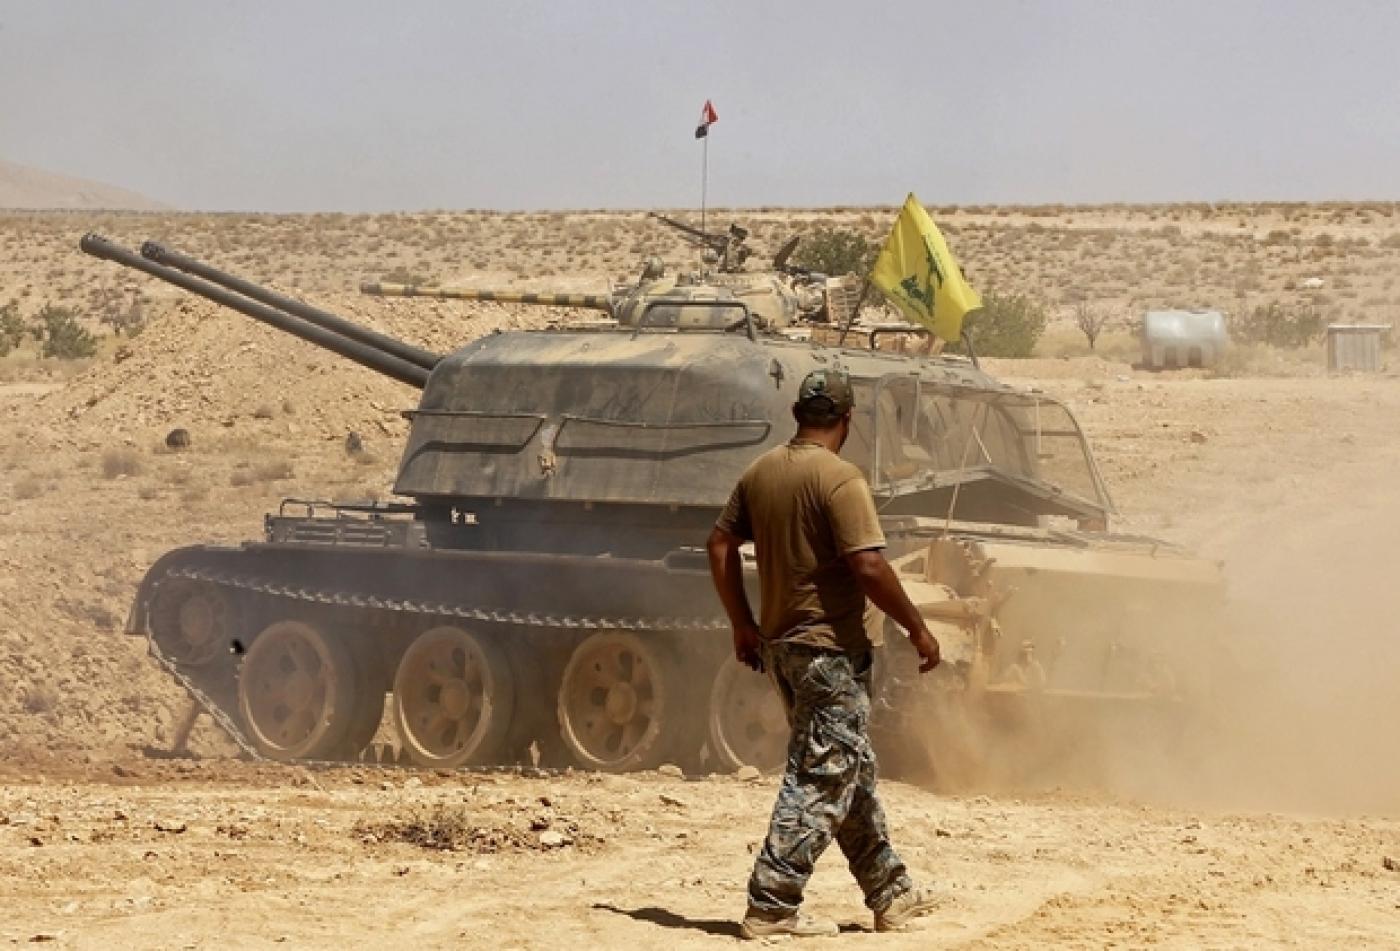 Syrie : Le Hezbollah prépare-t-il une attaque contre les forces US ?